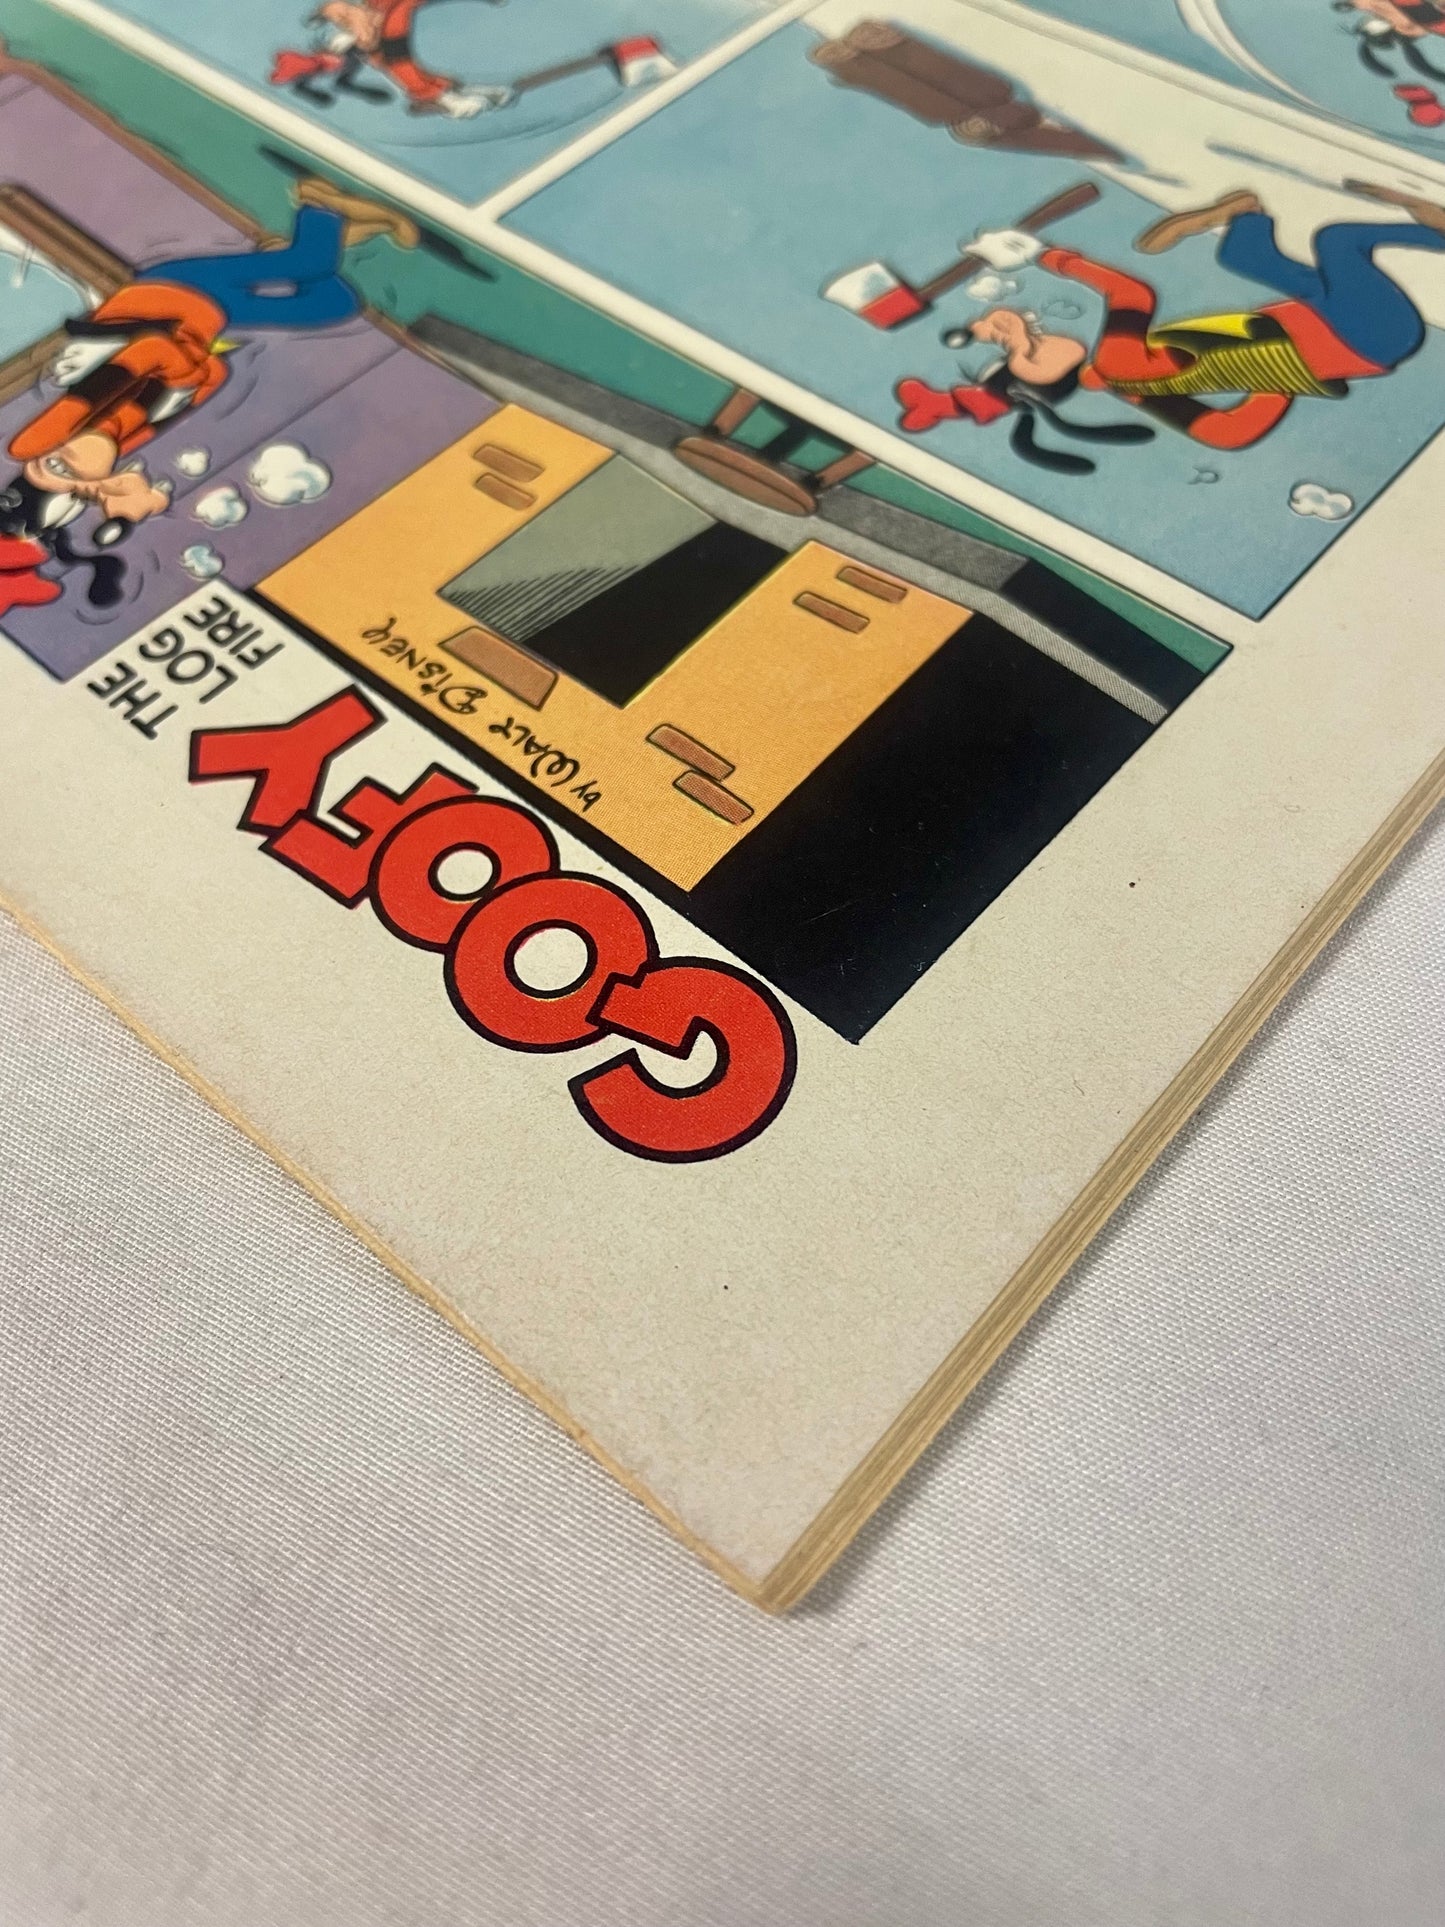 Four Color Comics Walt Disney's Goofy No. 1053